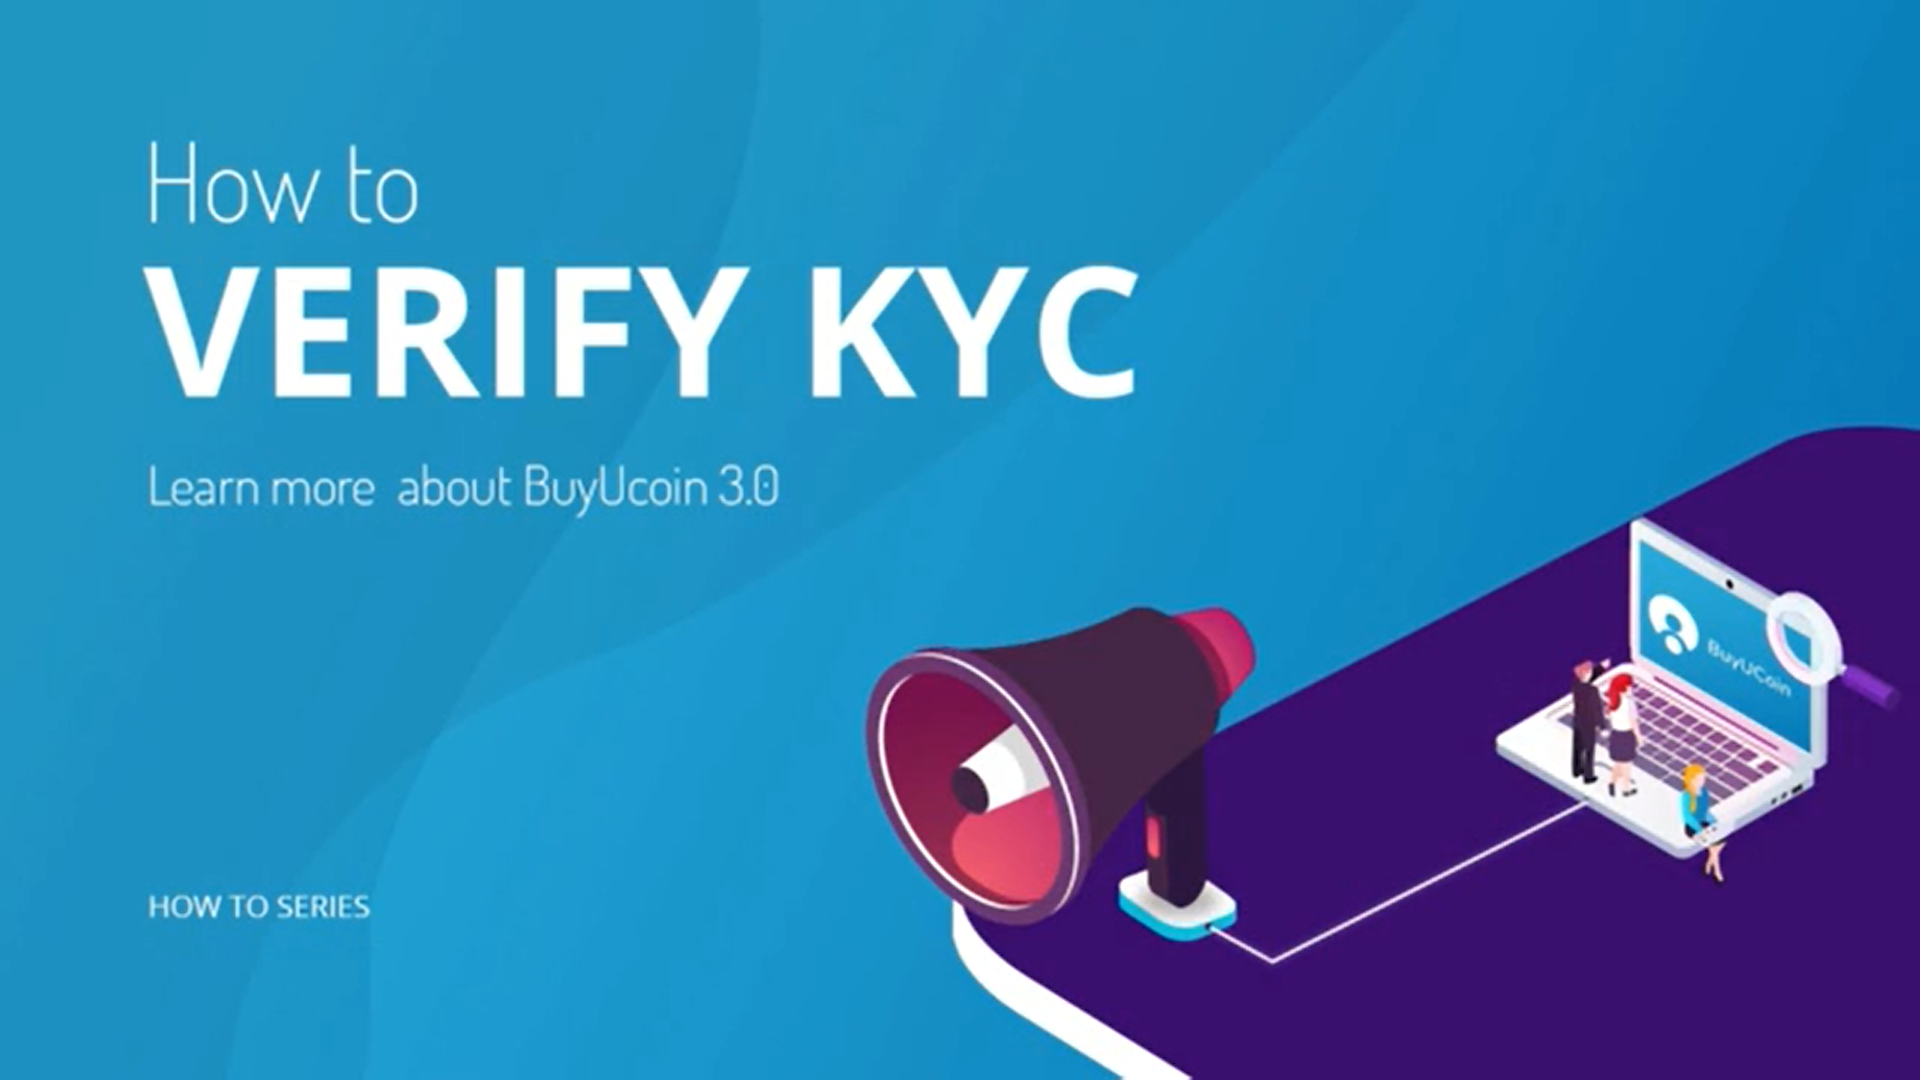 How To Verify KYC